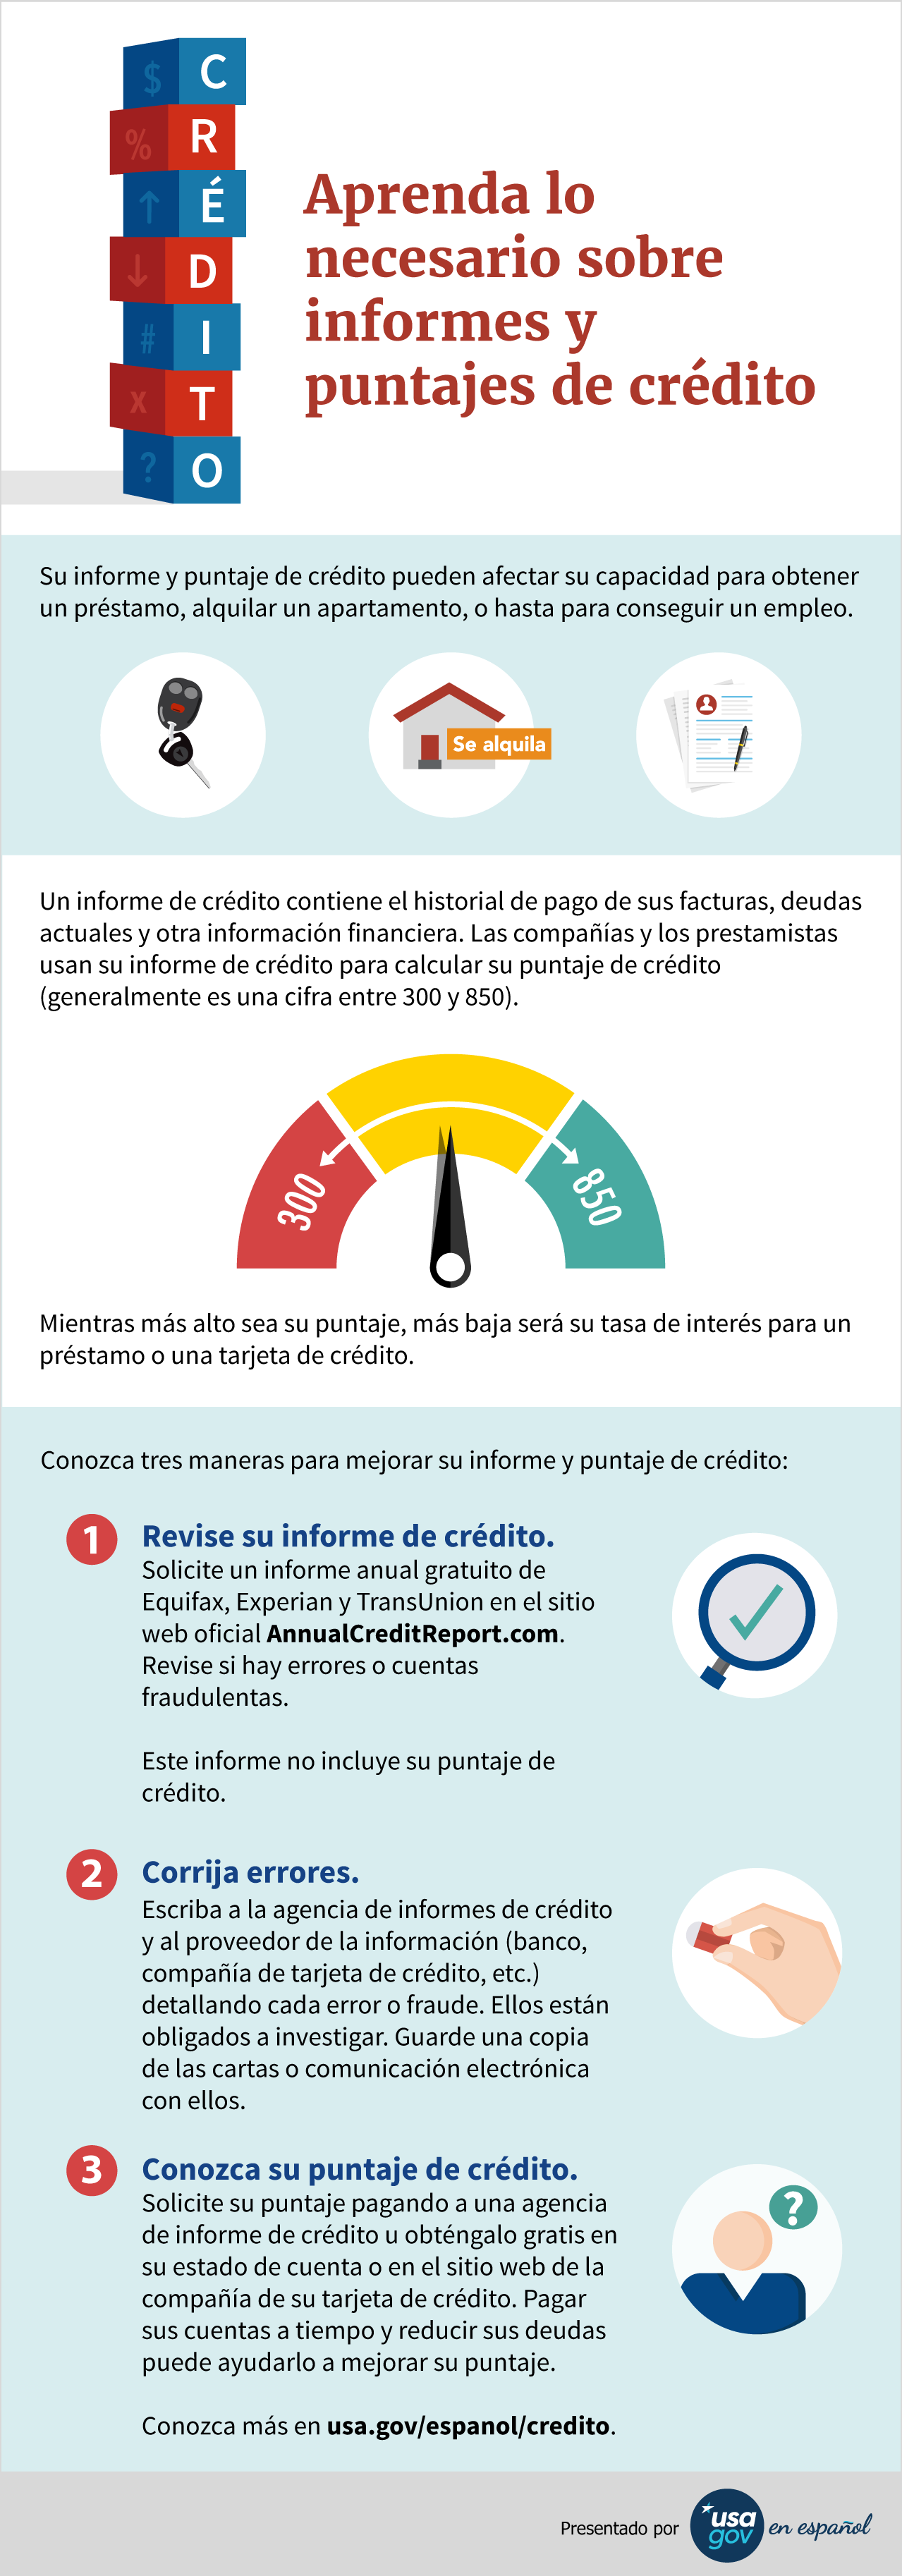 Infografía sobre sobre el informe y puntaje de crédito